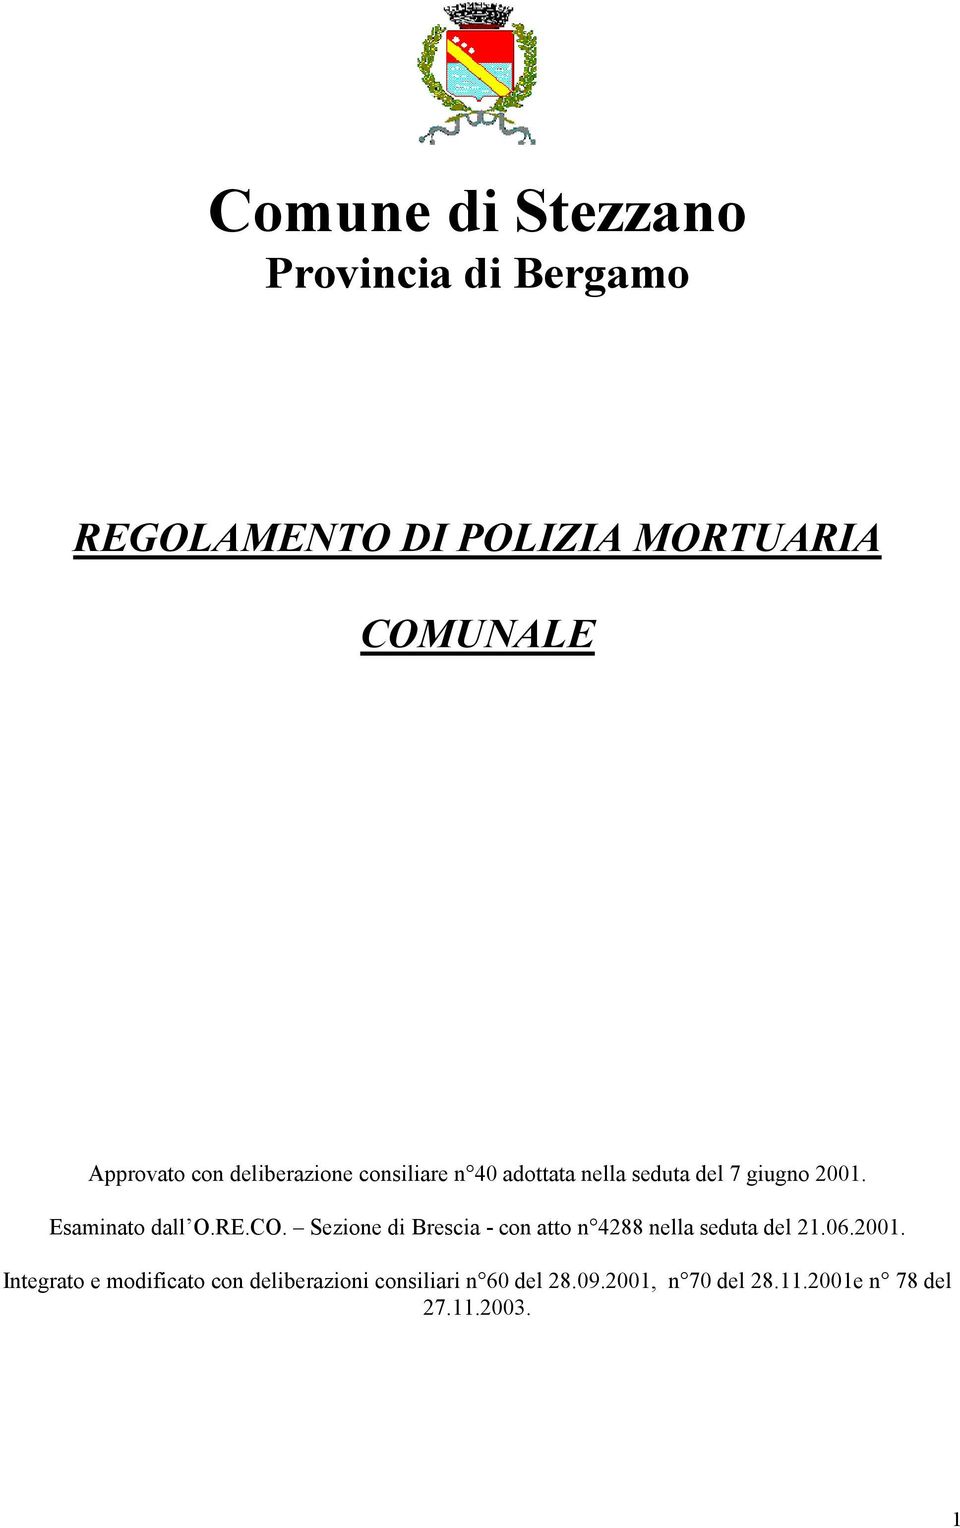 RE.CO. Sezione di Brescia - con atto n 4288 nella seduta del 21.06.2001.